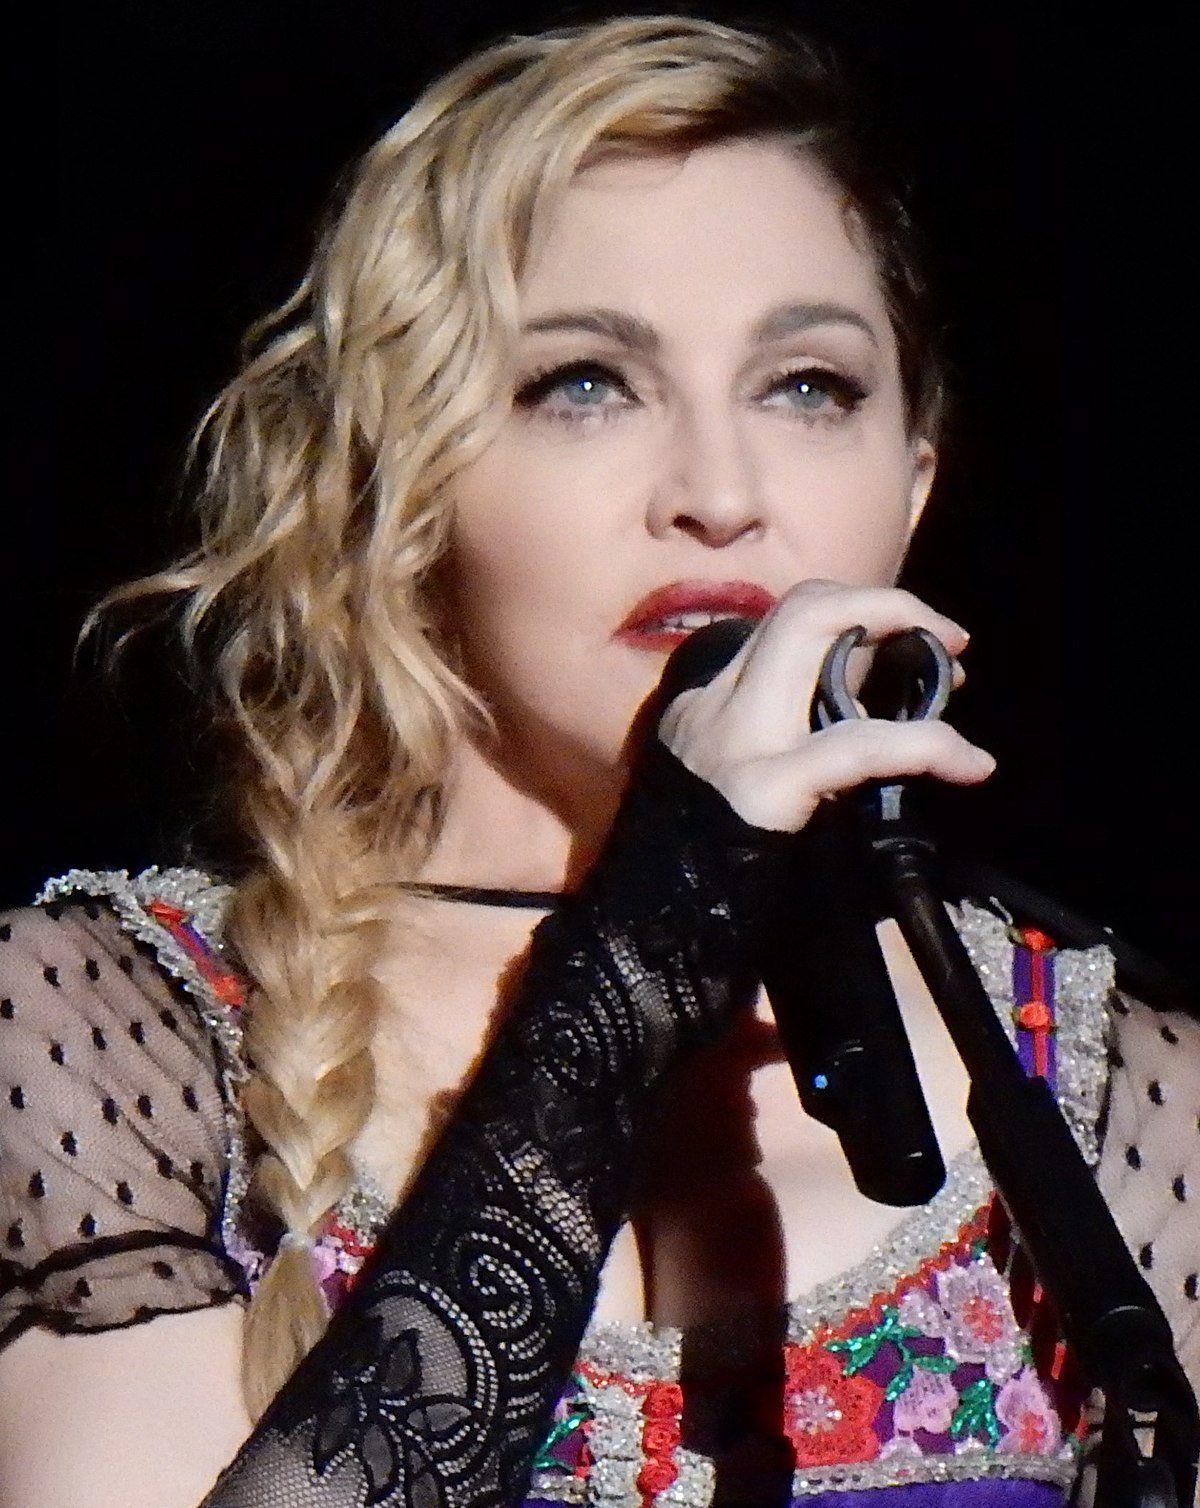 Kevlar reccomend Madonna losing virginity experiences